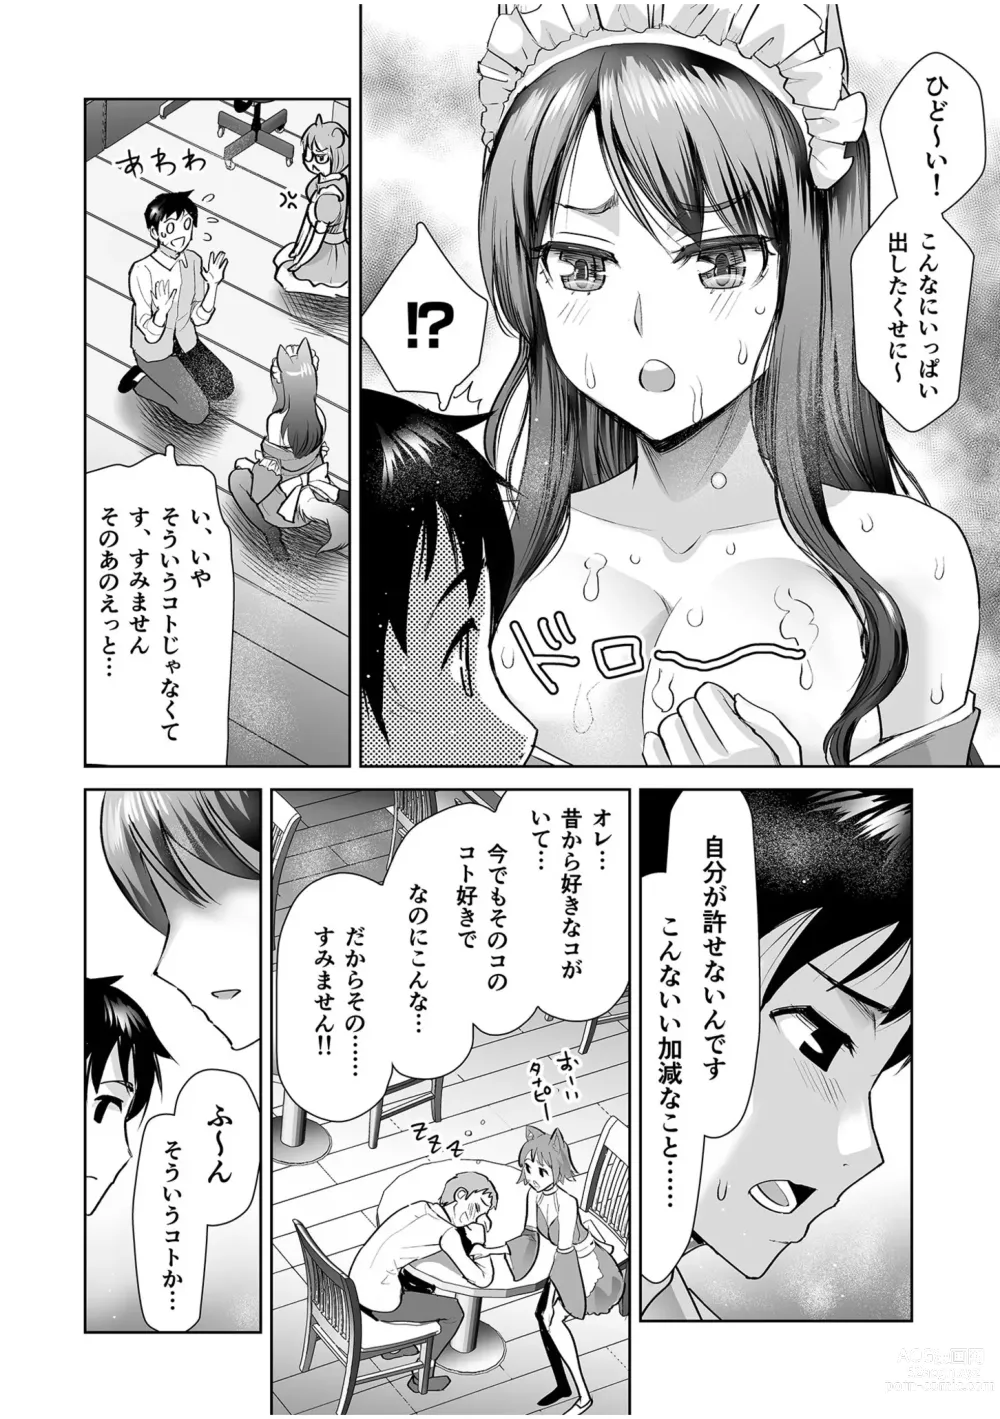 Page 16 of manga Erotic Maid Mimi Japan